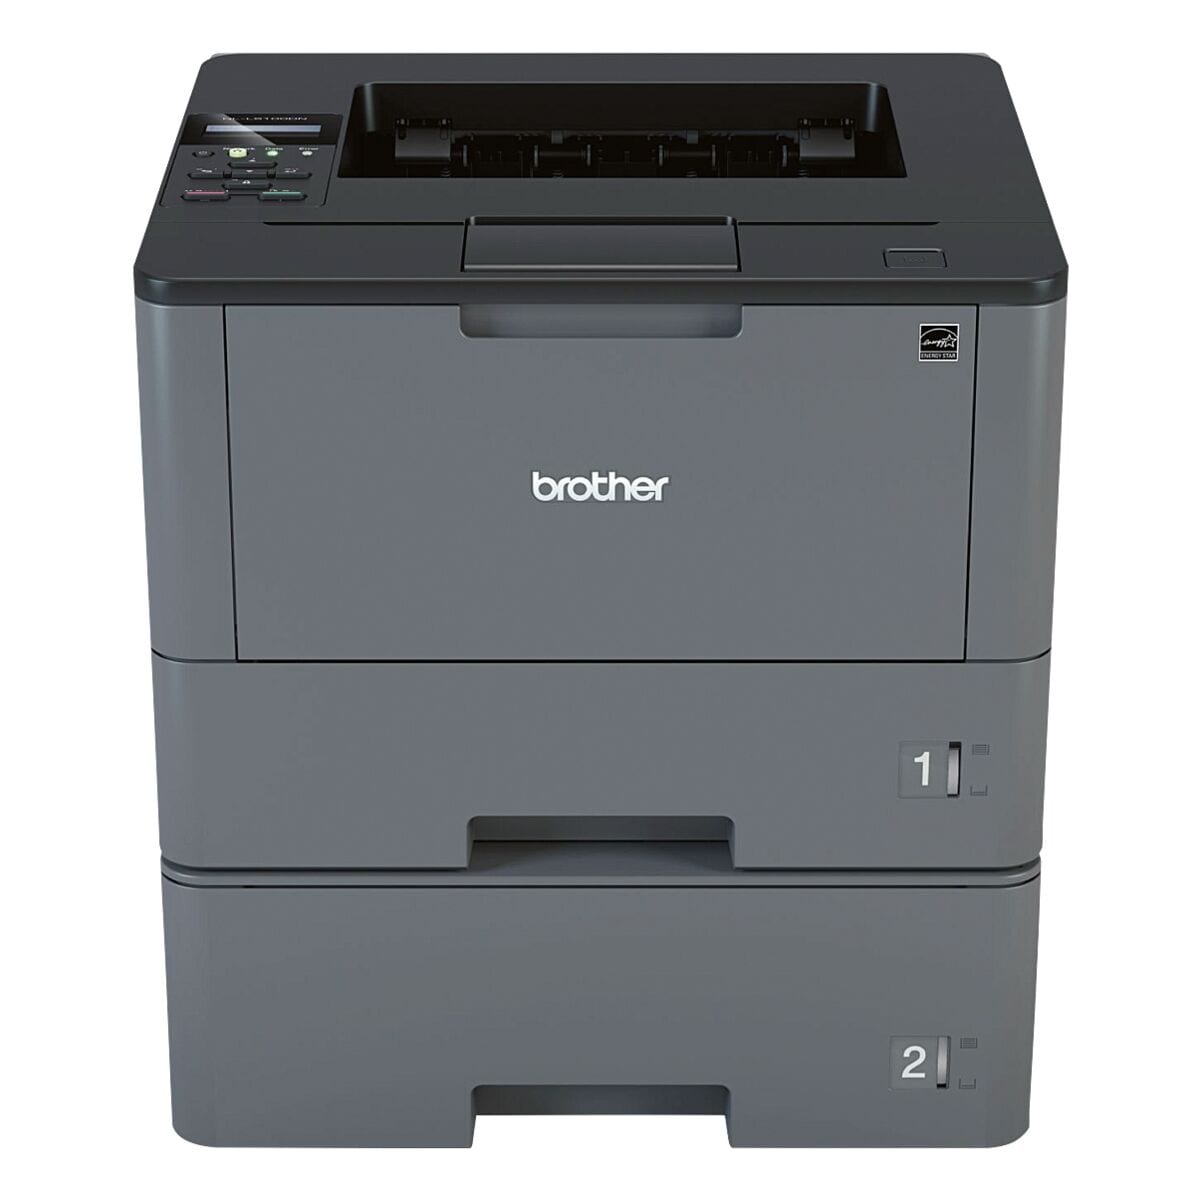 Brother HL-L5100DNT Laserdrucker, A4 schwarz weiß Laserdrucker, 1200 x 1200 dpi, mit LAN